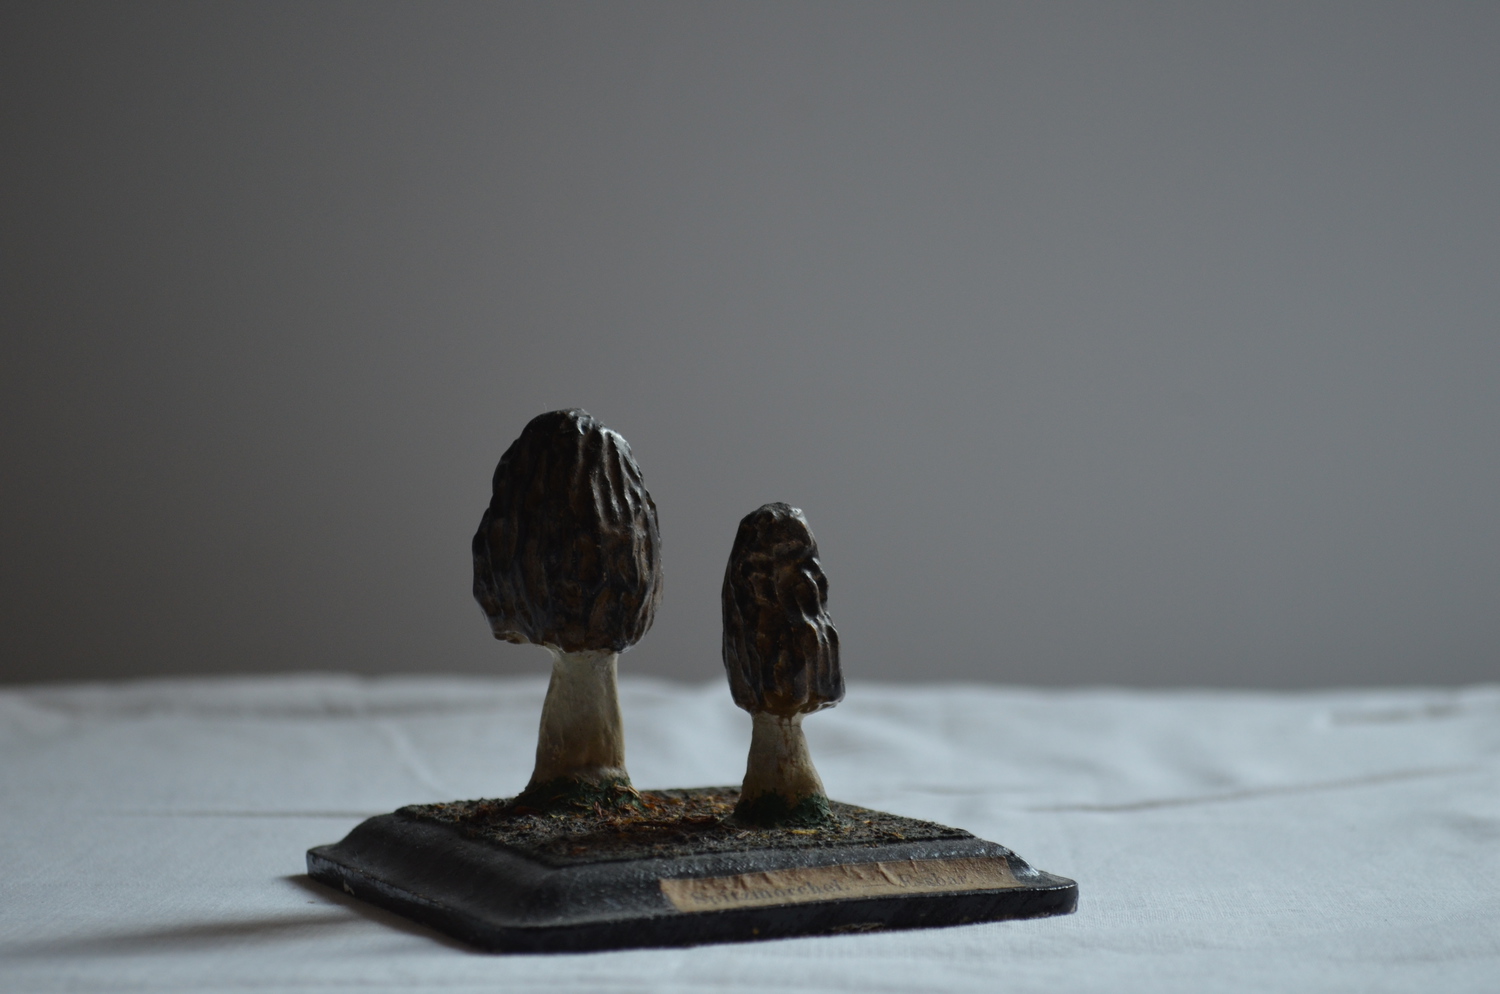 Mushroom model